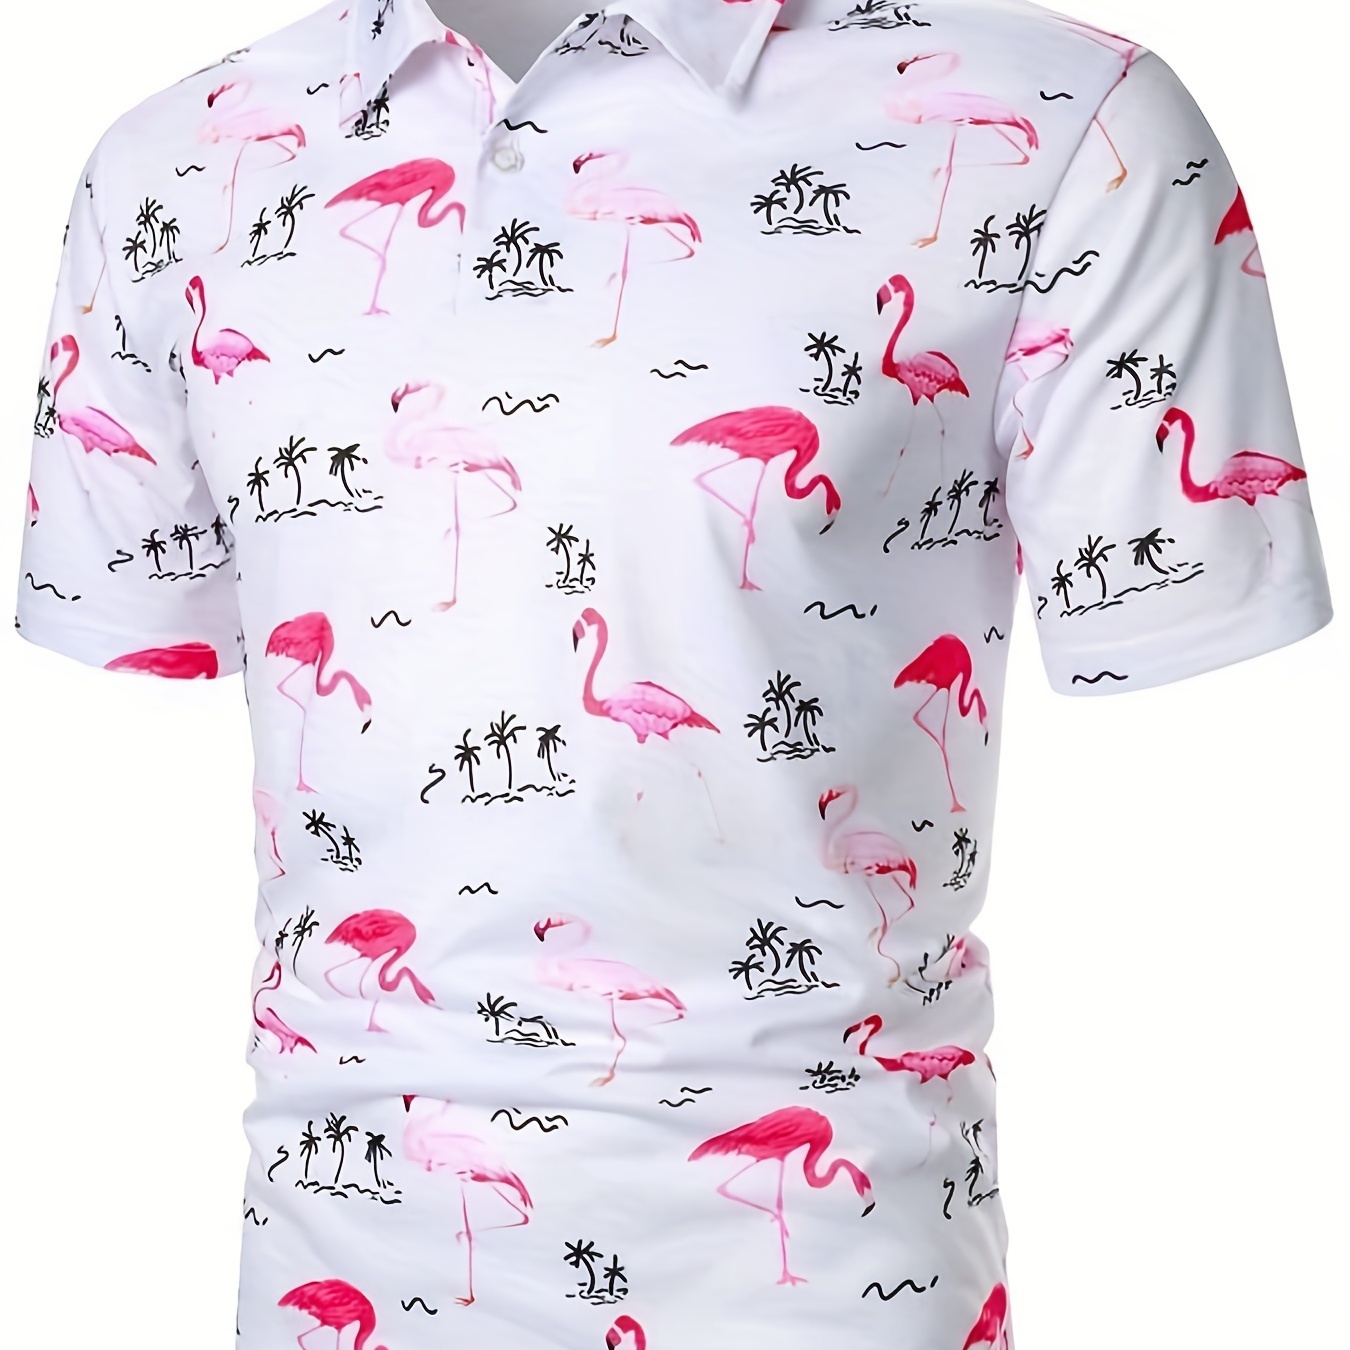 

Flamingo Print Men's Casual Button Up Short Sleeve Lightweight Shirt, Men's Shirt For Summer, Tops For Men